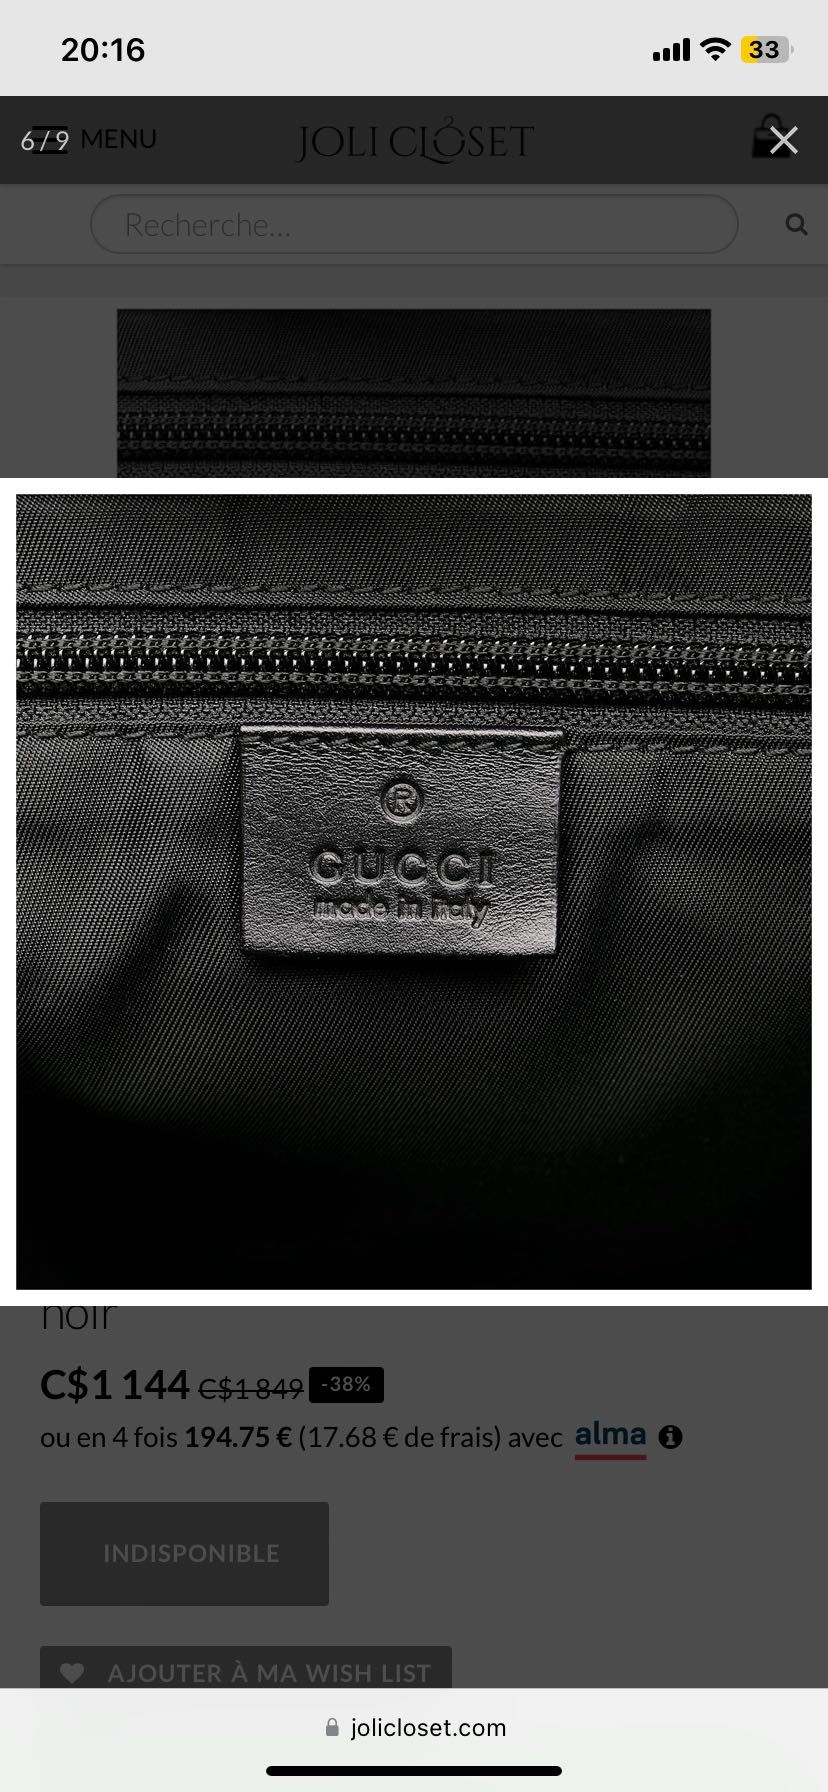 Продам Gucci нову чоловічу сумку,оригінал,з біркою,привертає увагу